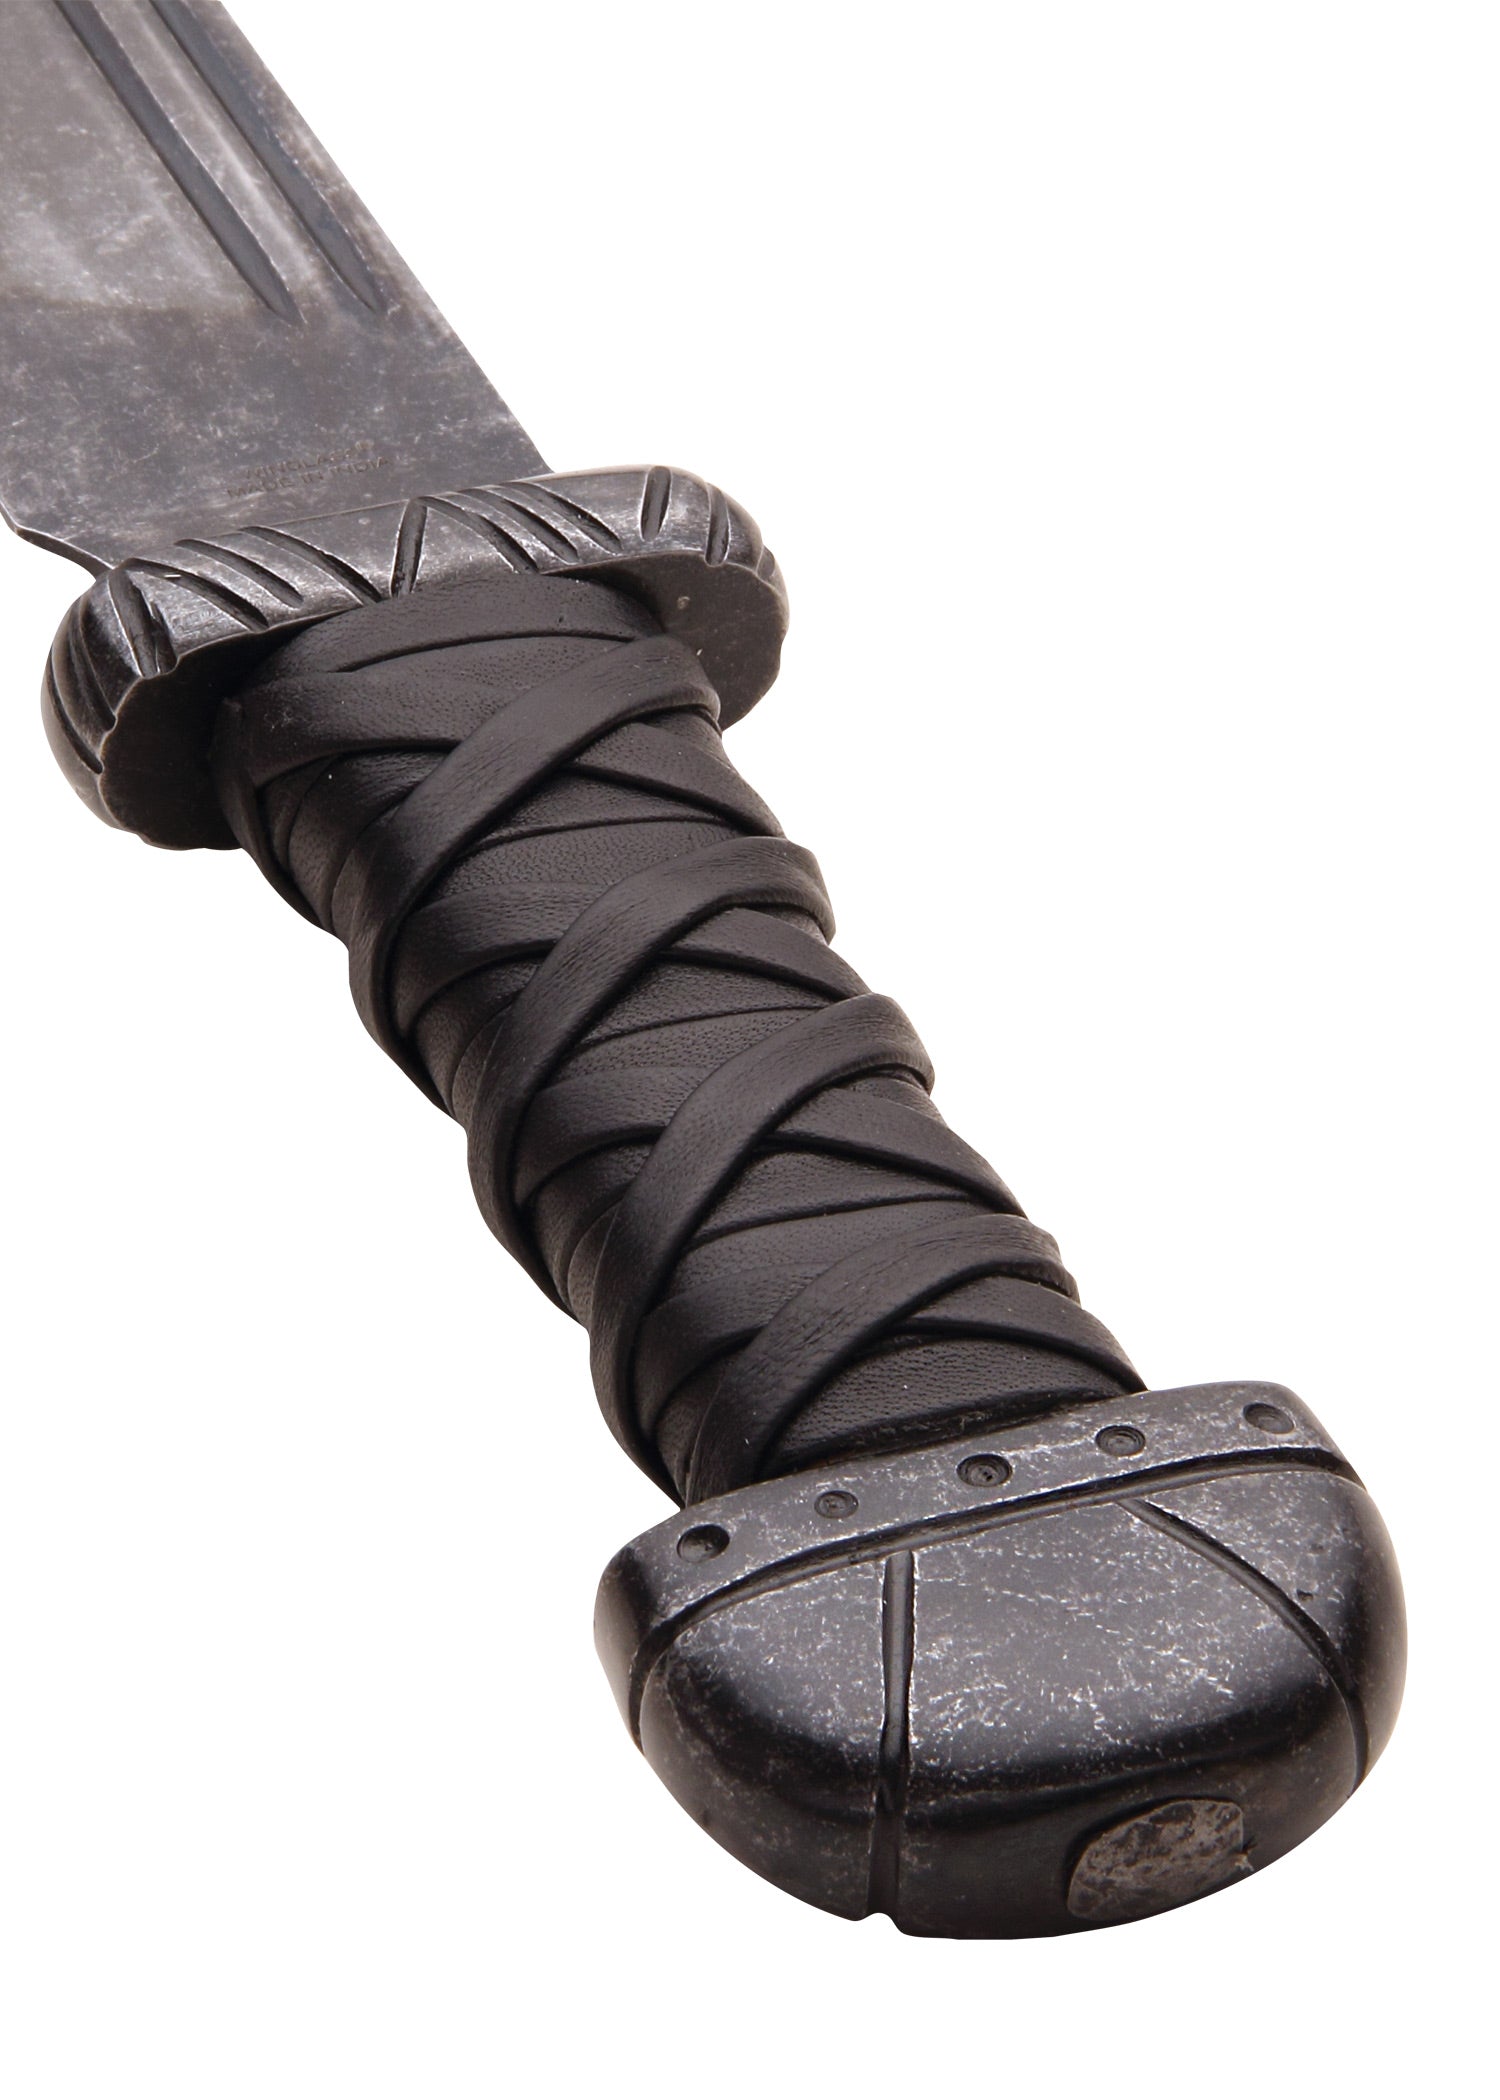 Couteau Viking fait à la main en acier à haute teneur en carbone